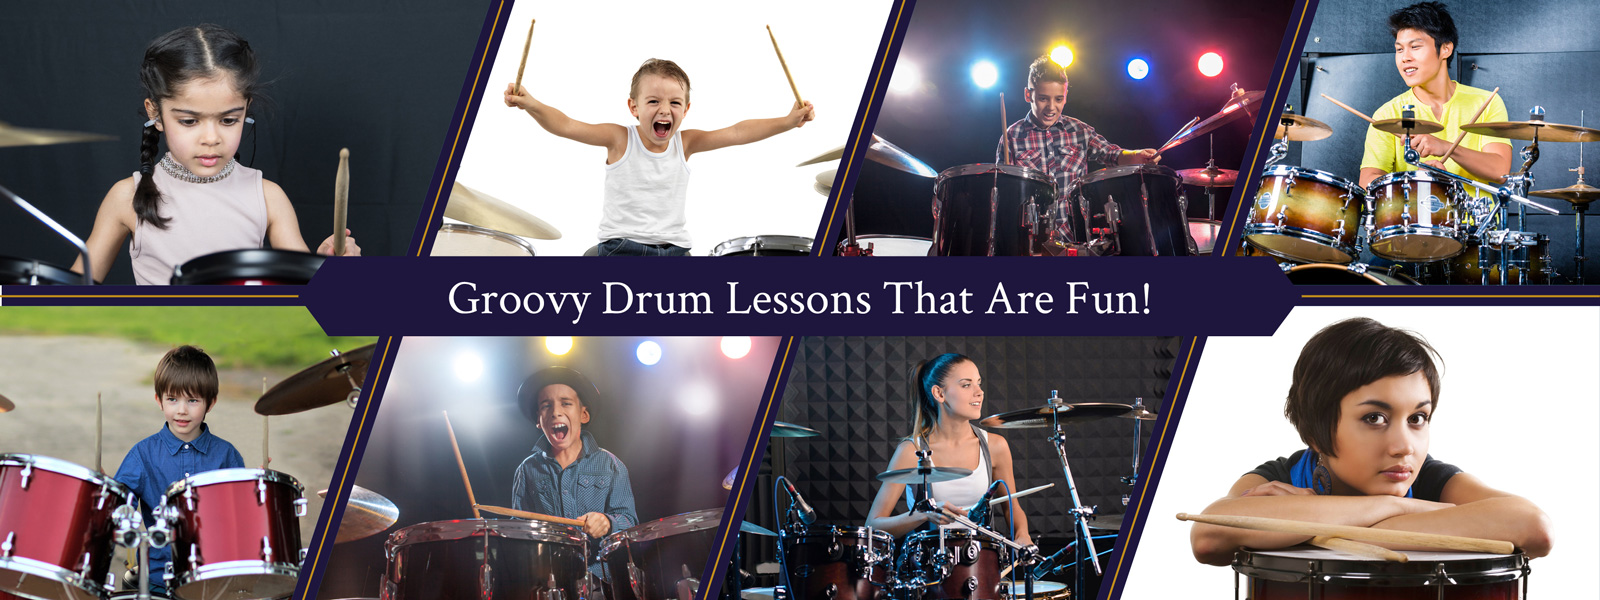 Spokane Drum Lessons